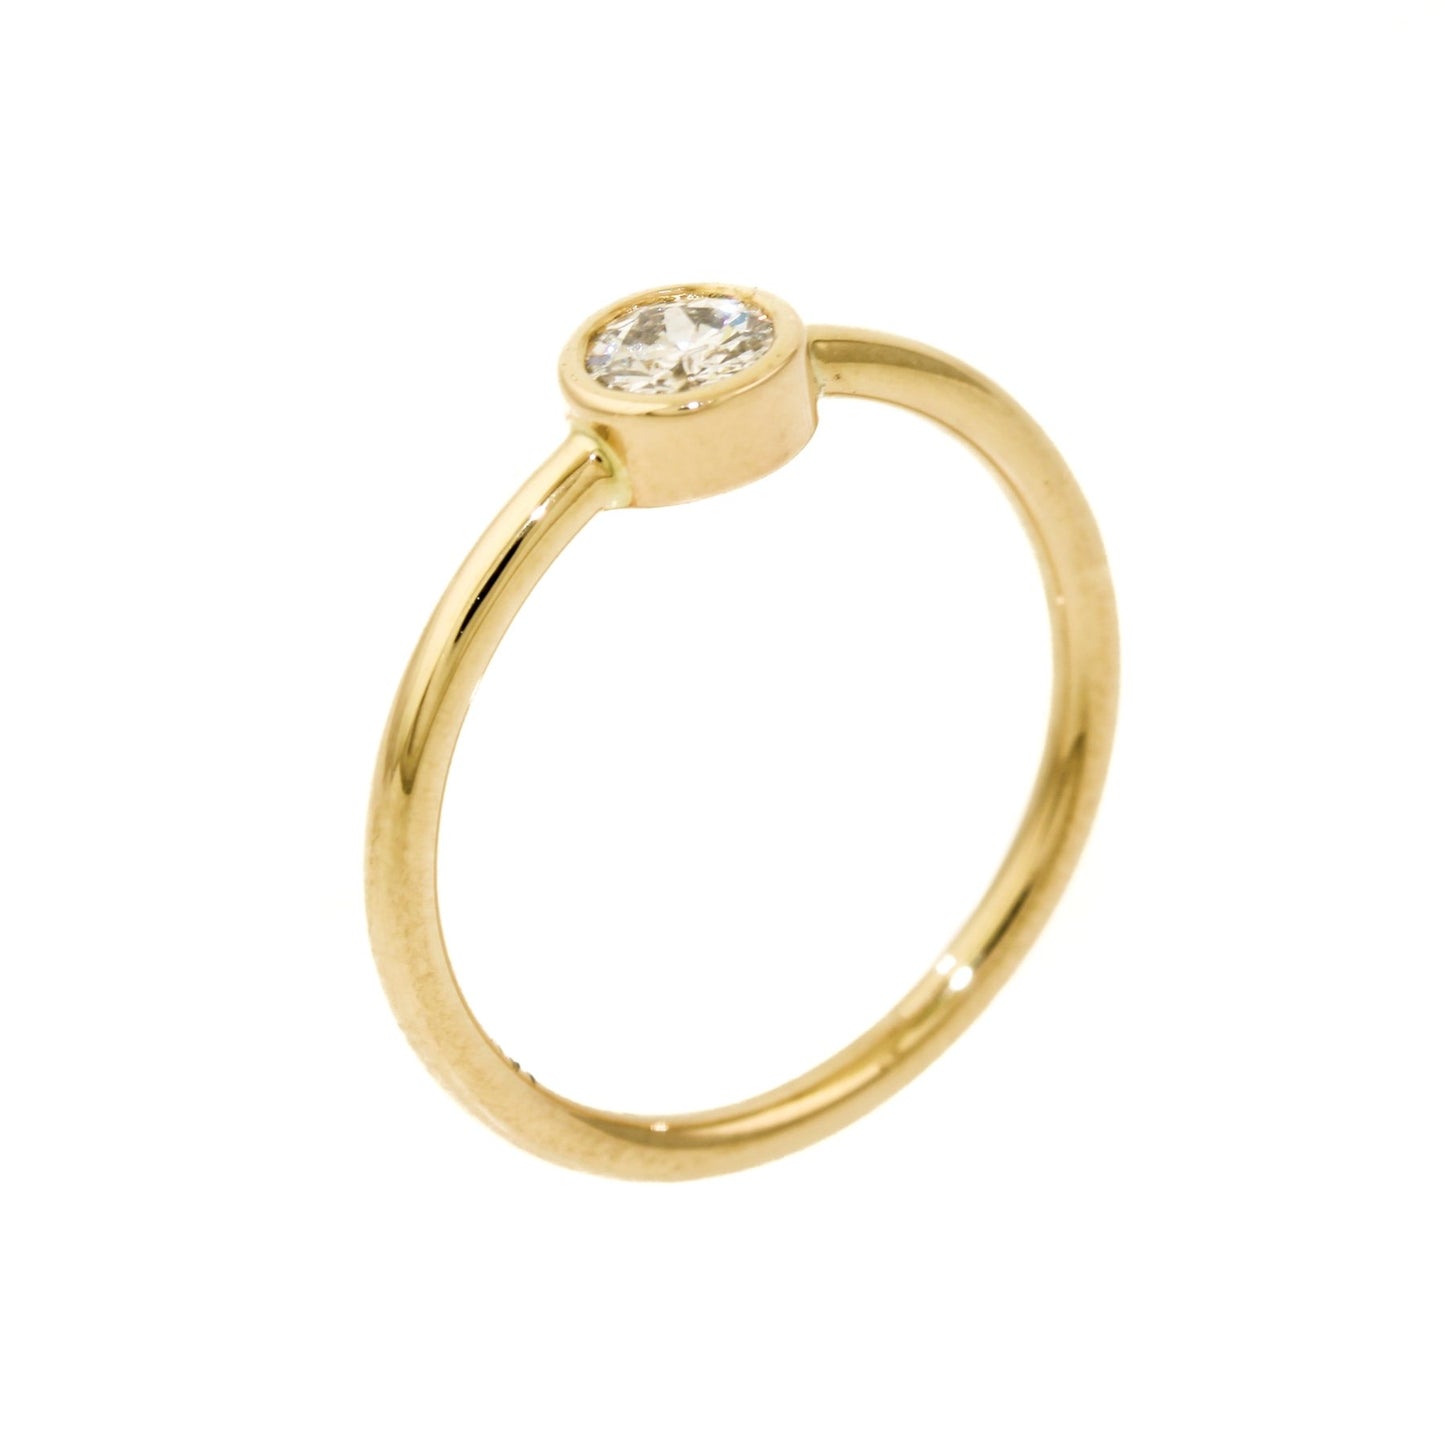 Round Cut Diamond Ring in 14K - Kingdom Jewelry